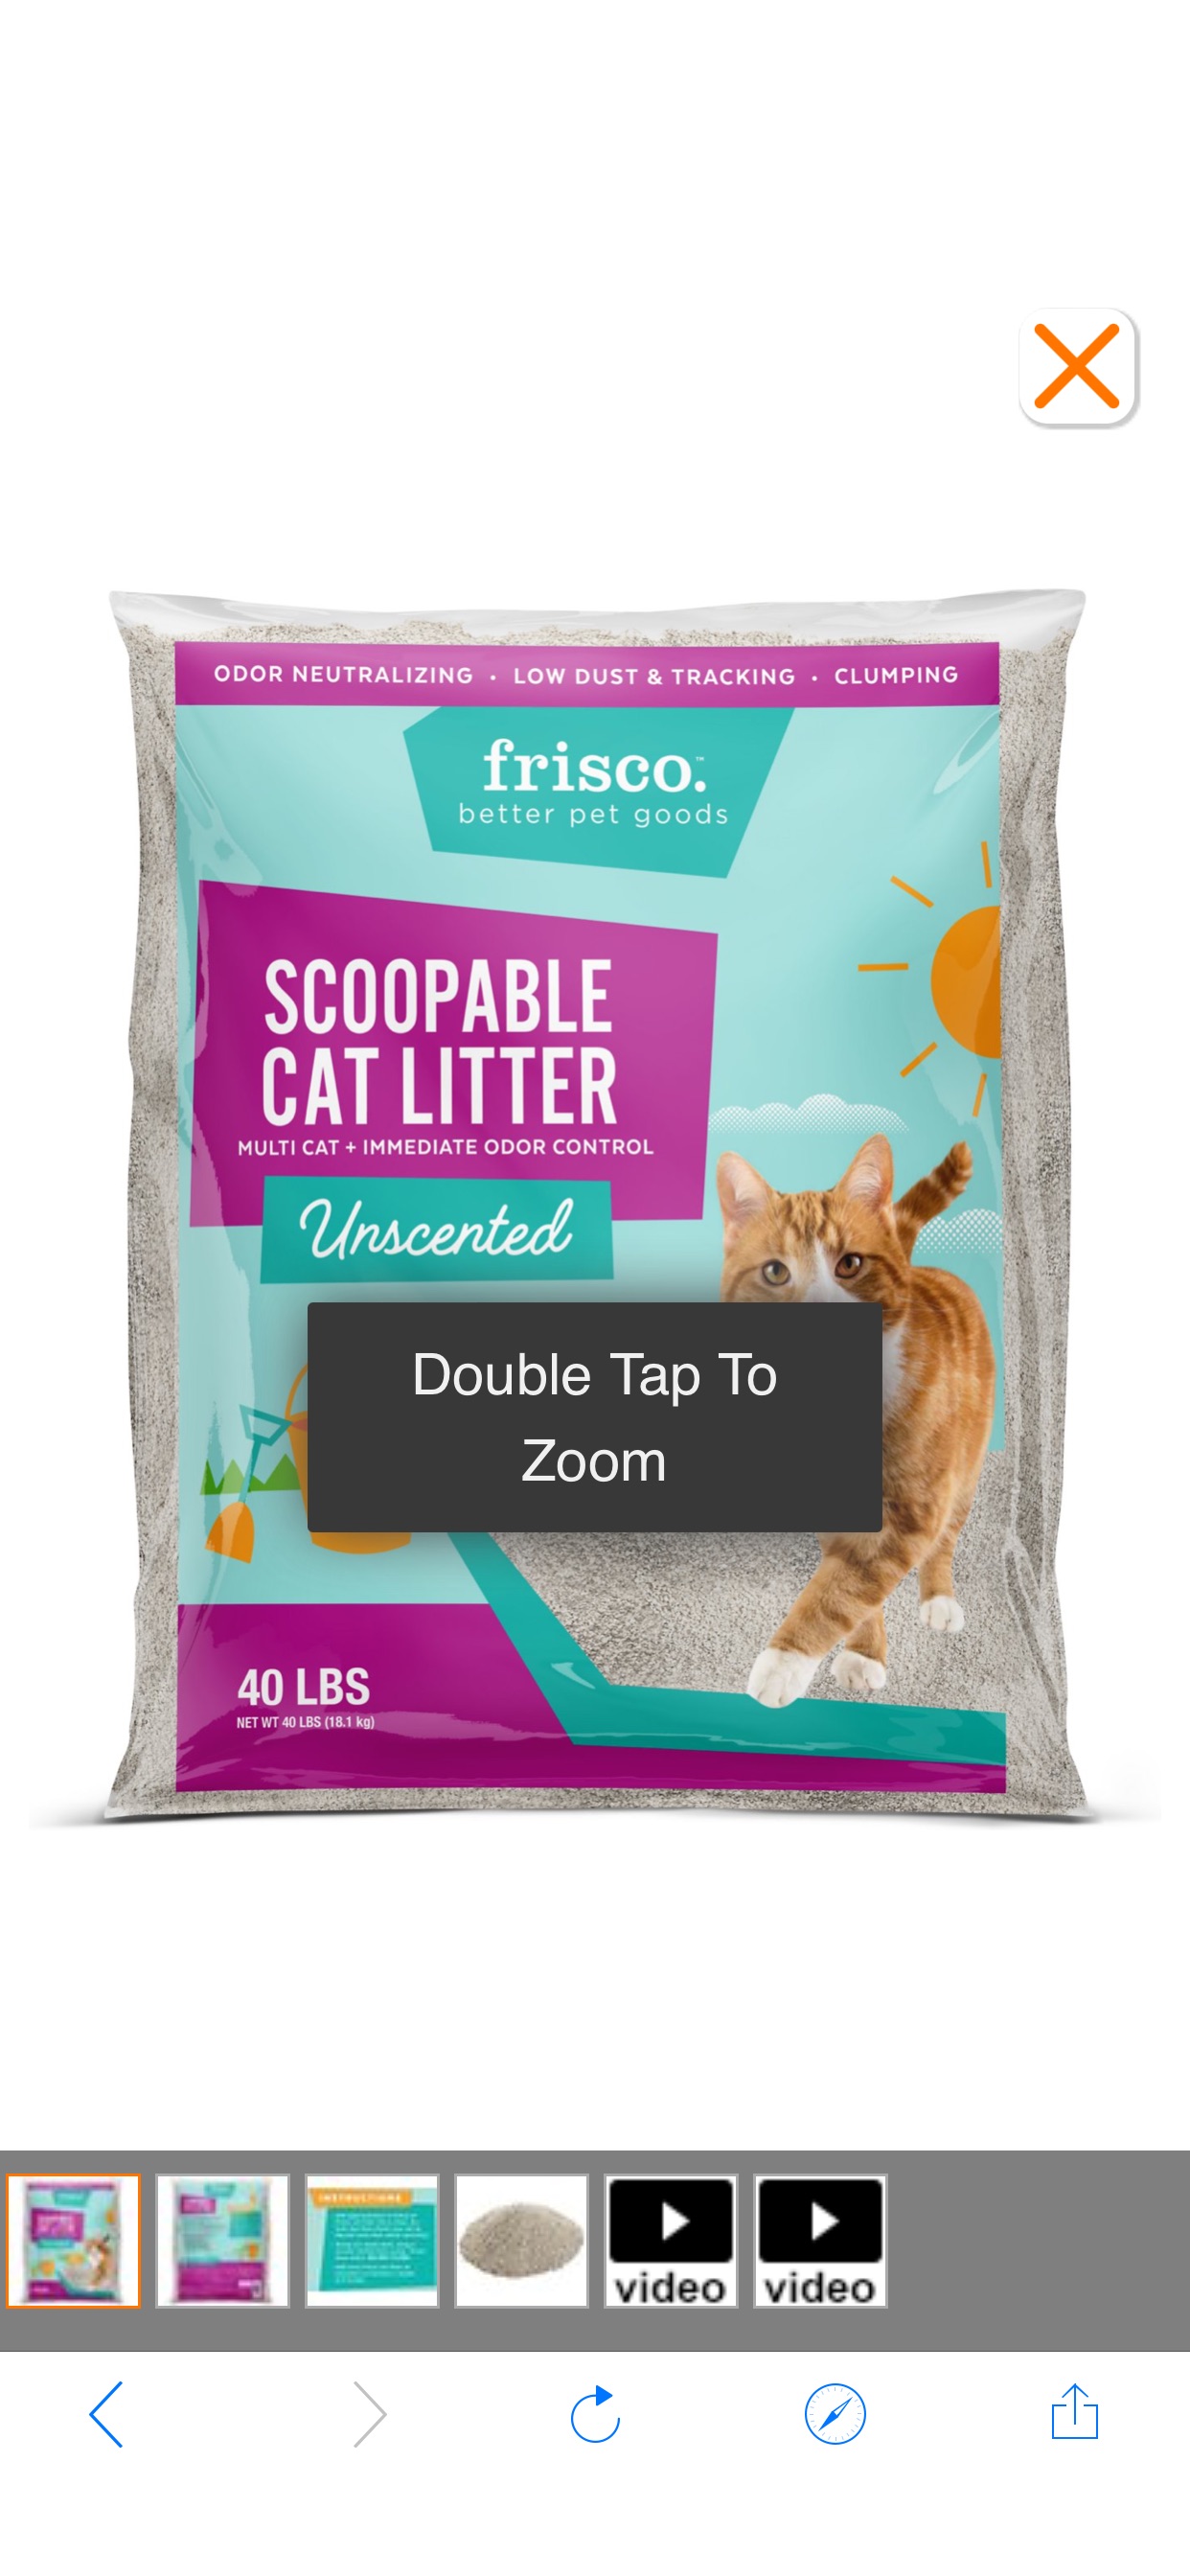 FRISCO 无味猫砂，适合多猫家庭，40磅